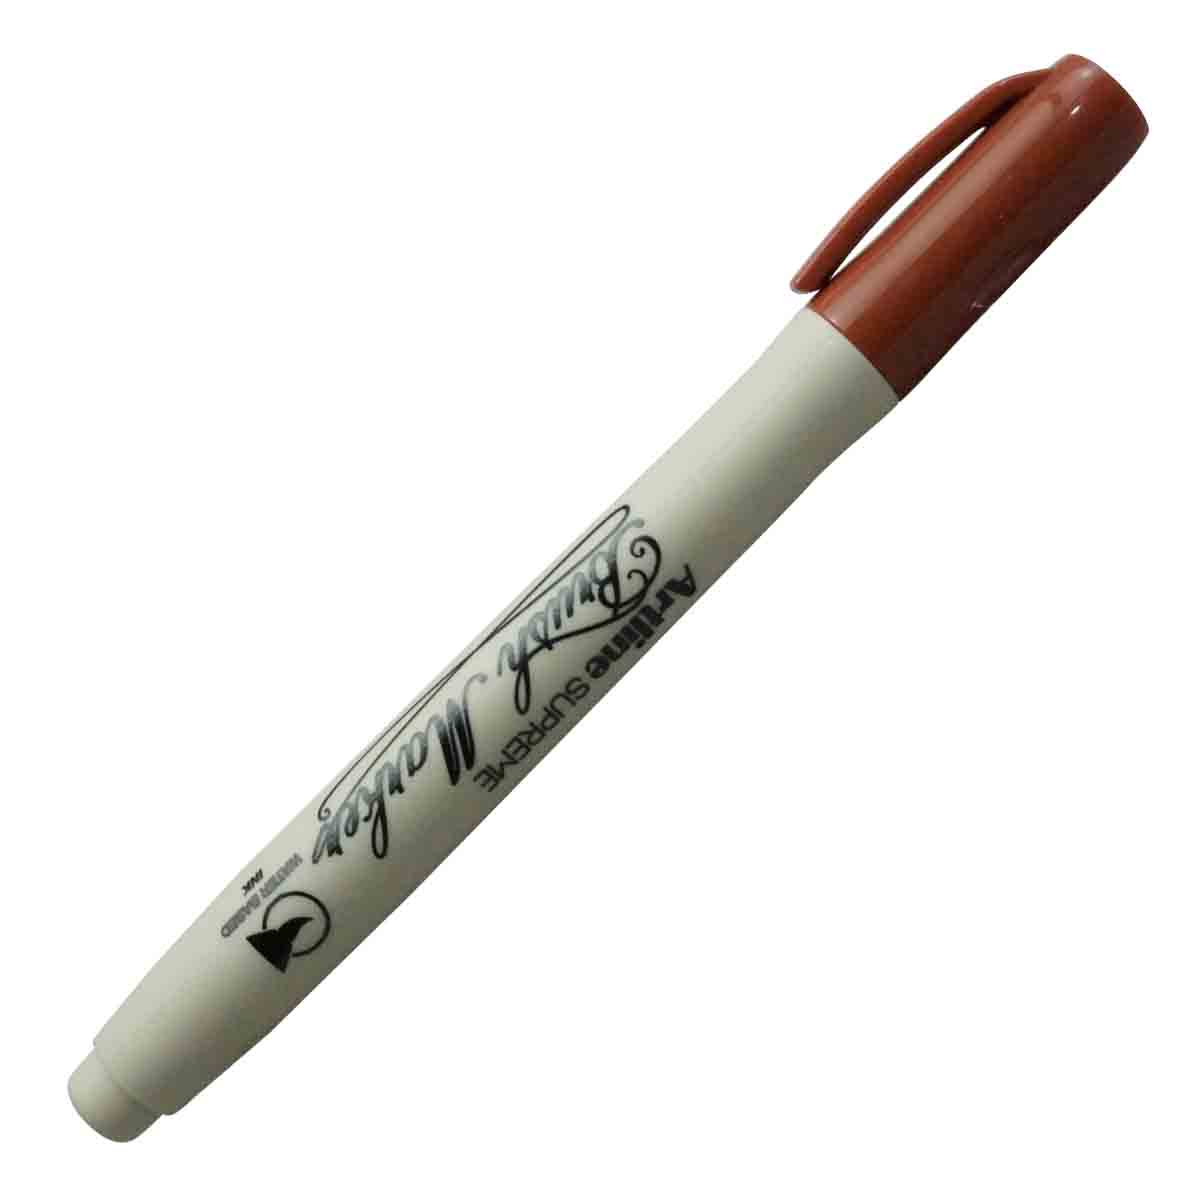 Artline Brush Marker - Brown Color Model 18642